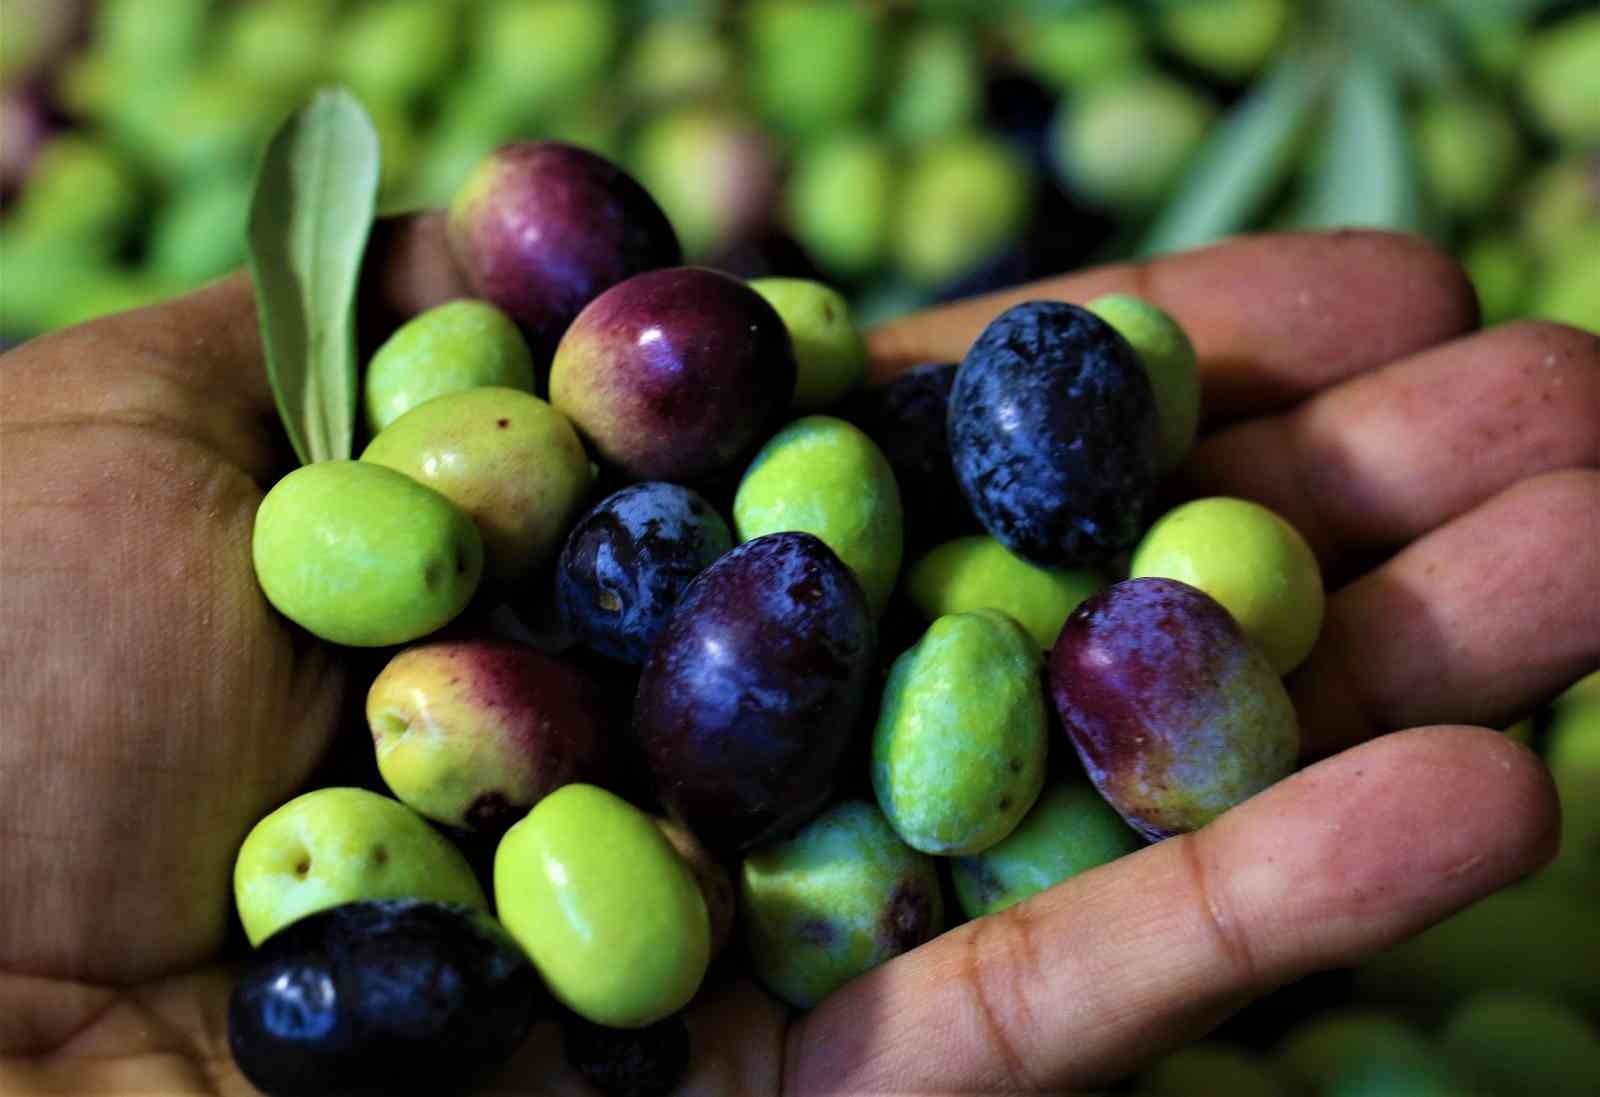 Tescille önü açılan Mut zeytinyağı Avrupa’ya ihraç edilmeye başlandı #mersin